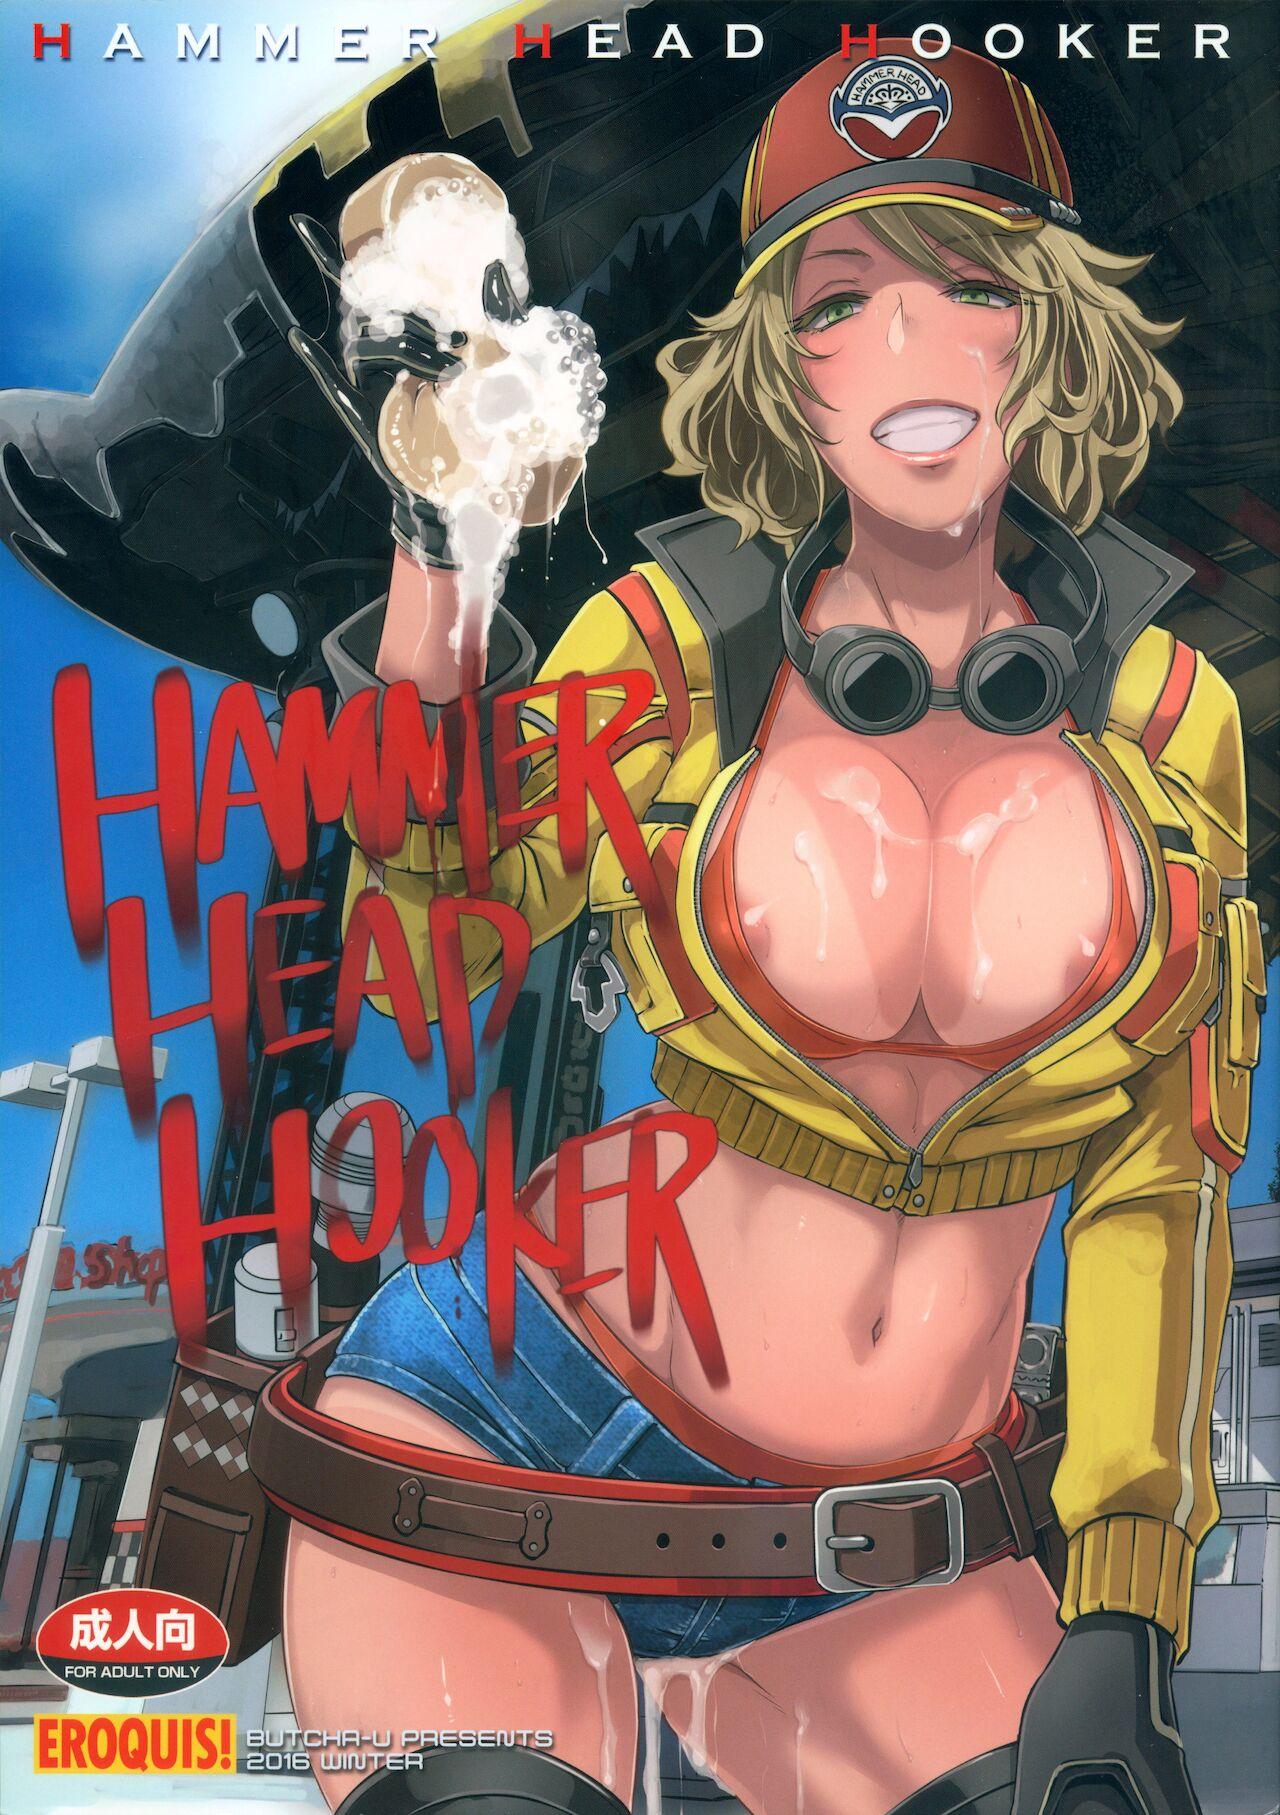 Staxxx Hammer Head Hooker - Final fantasy xv Gaycum - Picture 1